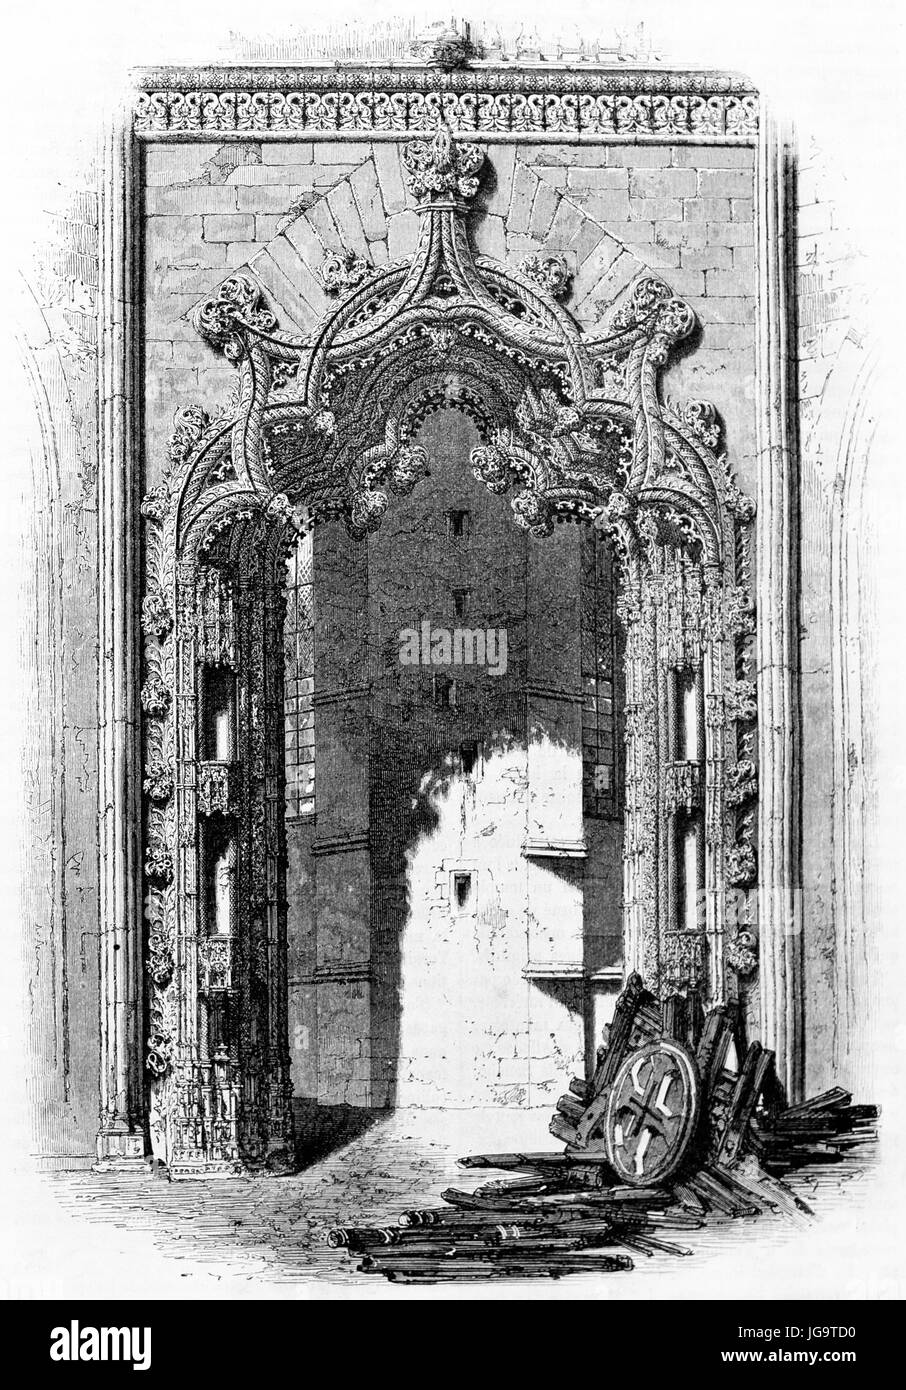 Portale delle Cappelle incompiuta riccamente decorato nel Monastero di Batalha, Portuagal. Antica arte di incisione in tonalità di grigio di Therond, pubblicata il 1861 Foto Stock